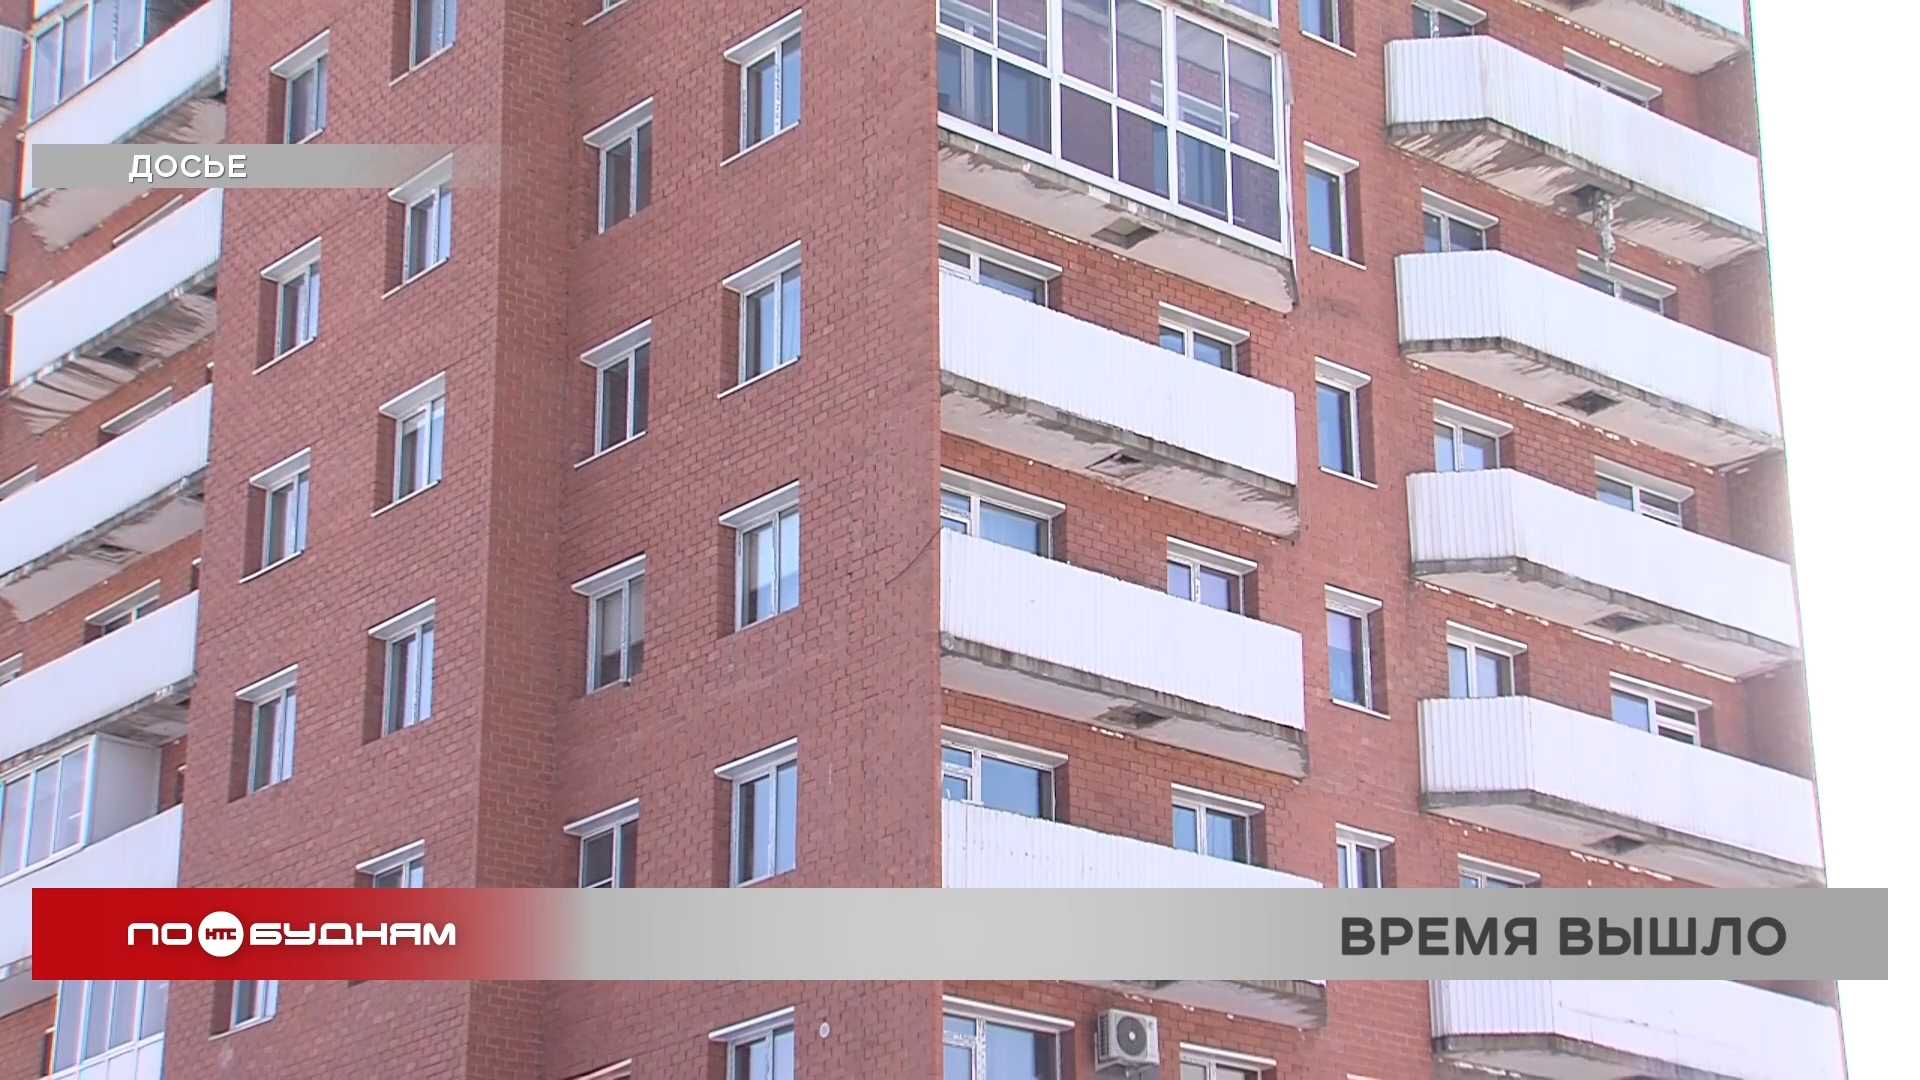 Жители многострадальной дома на ул.Пискунова в Иркутске собираются подать апелляцию в Верховный суд